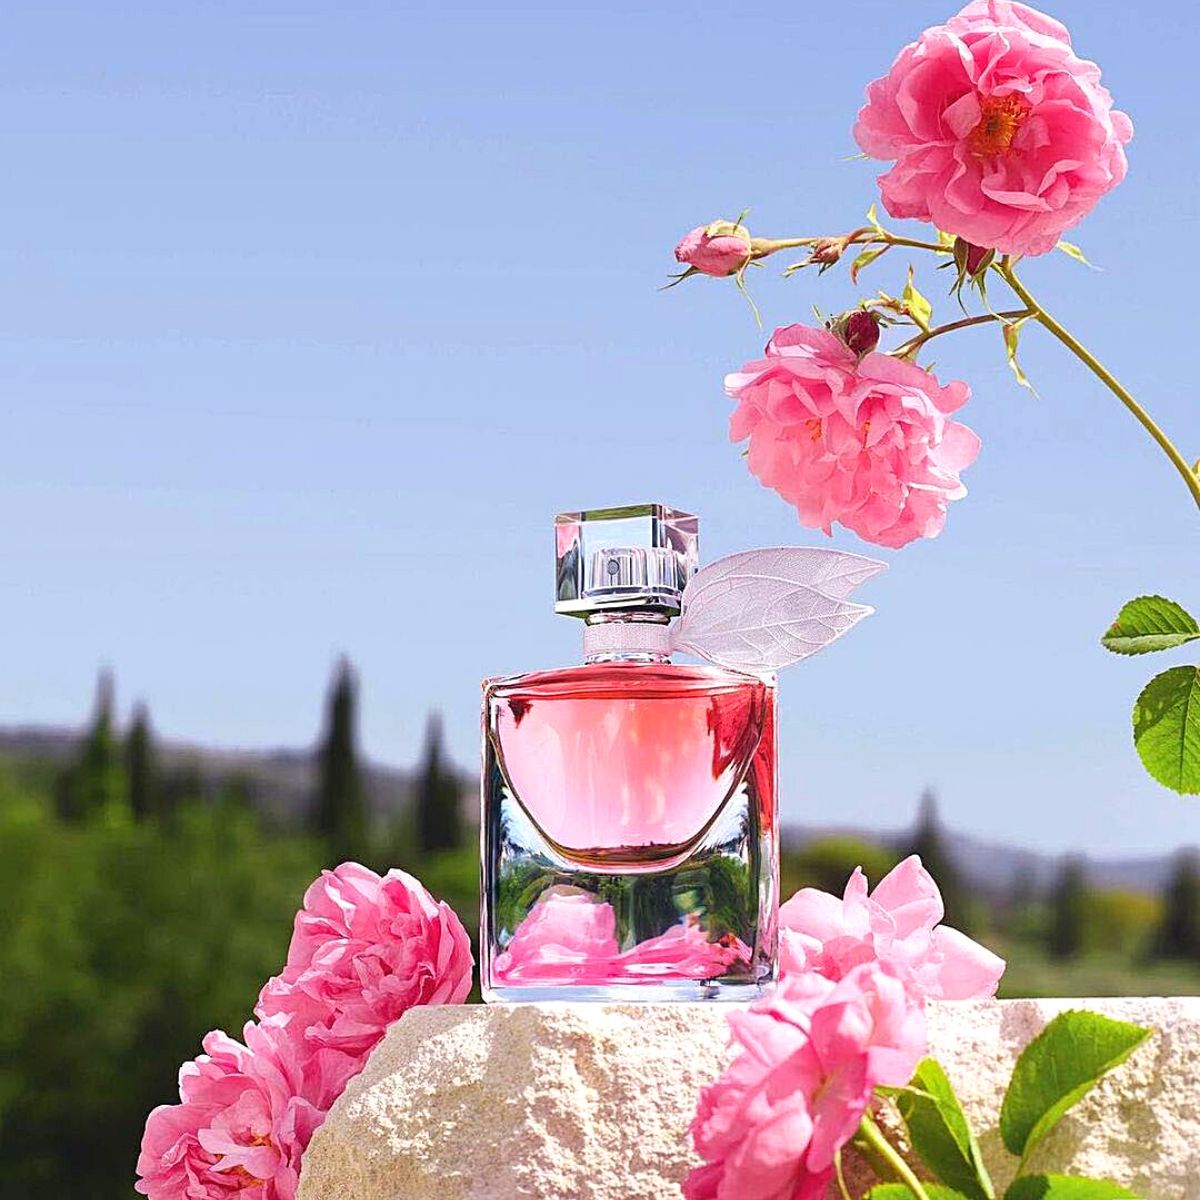 Iconic Rose Centifolia essential in Lancôme’s perfumery